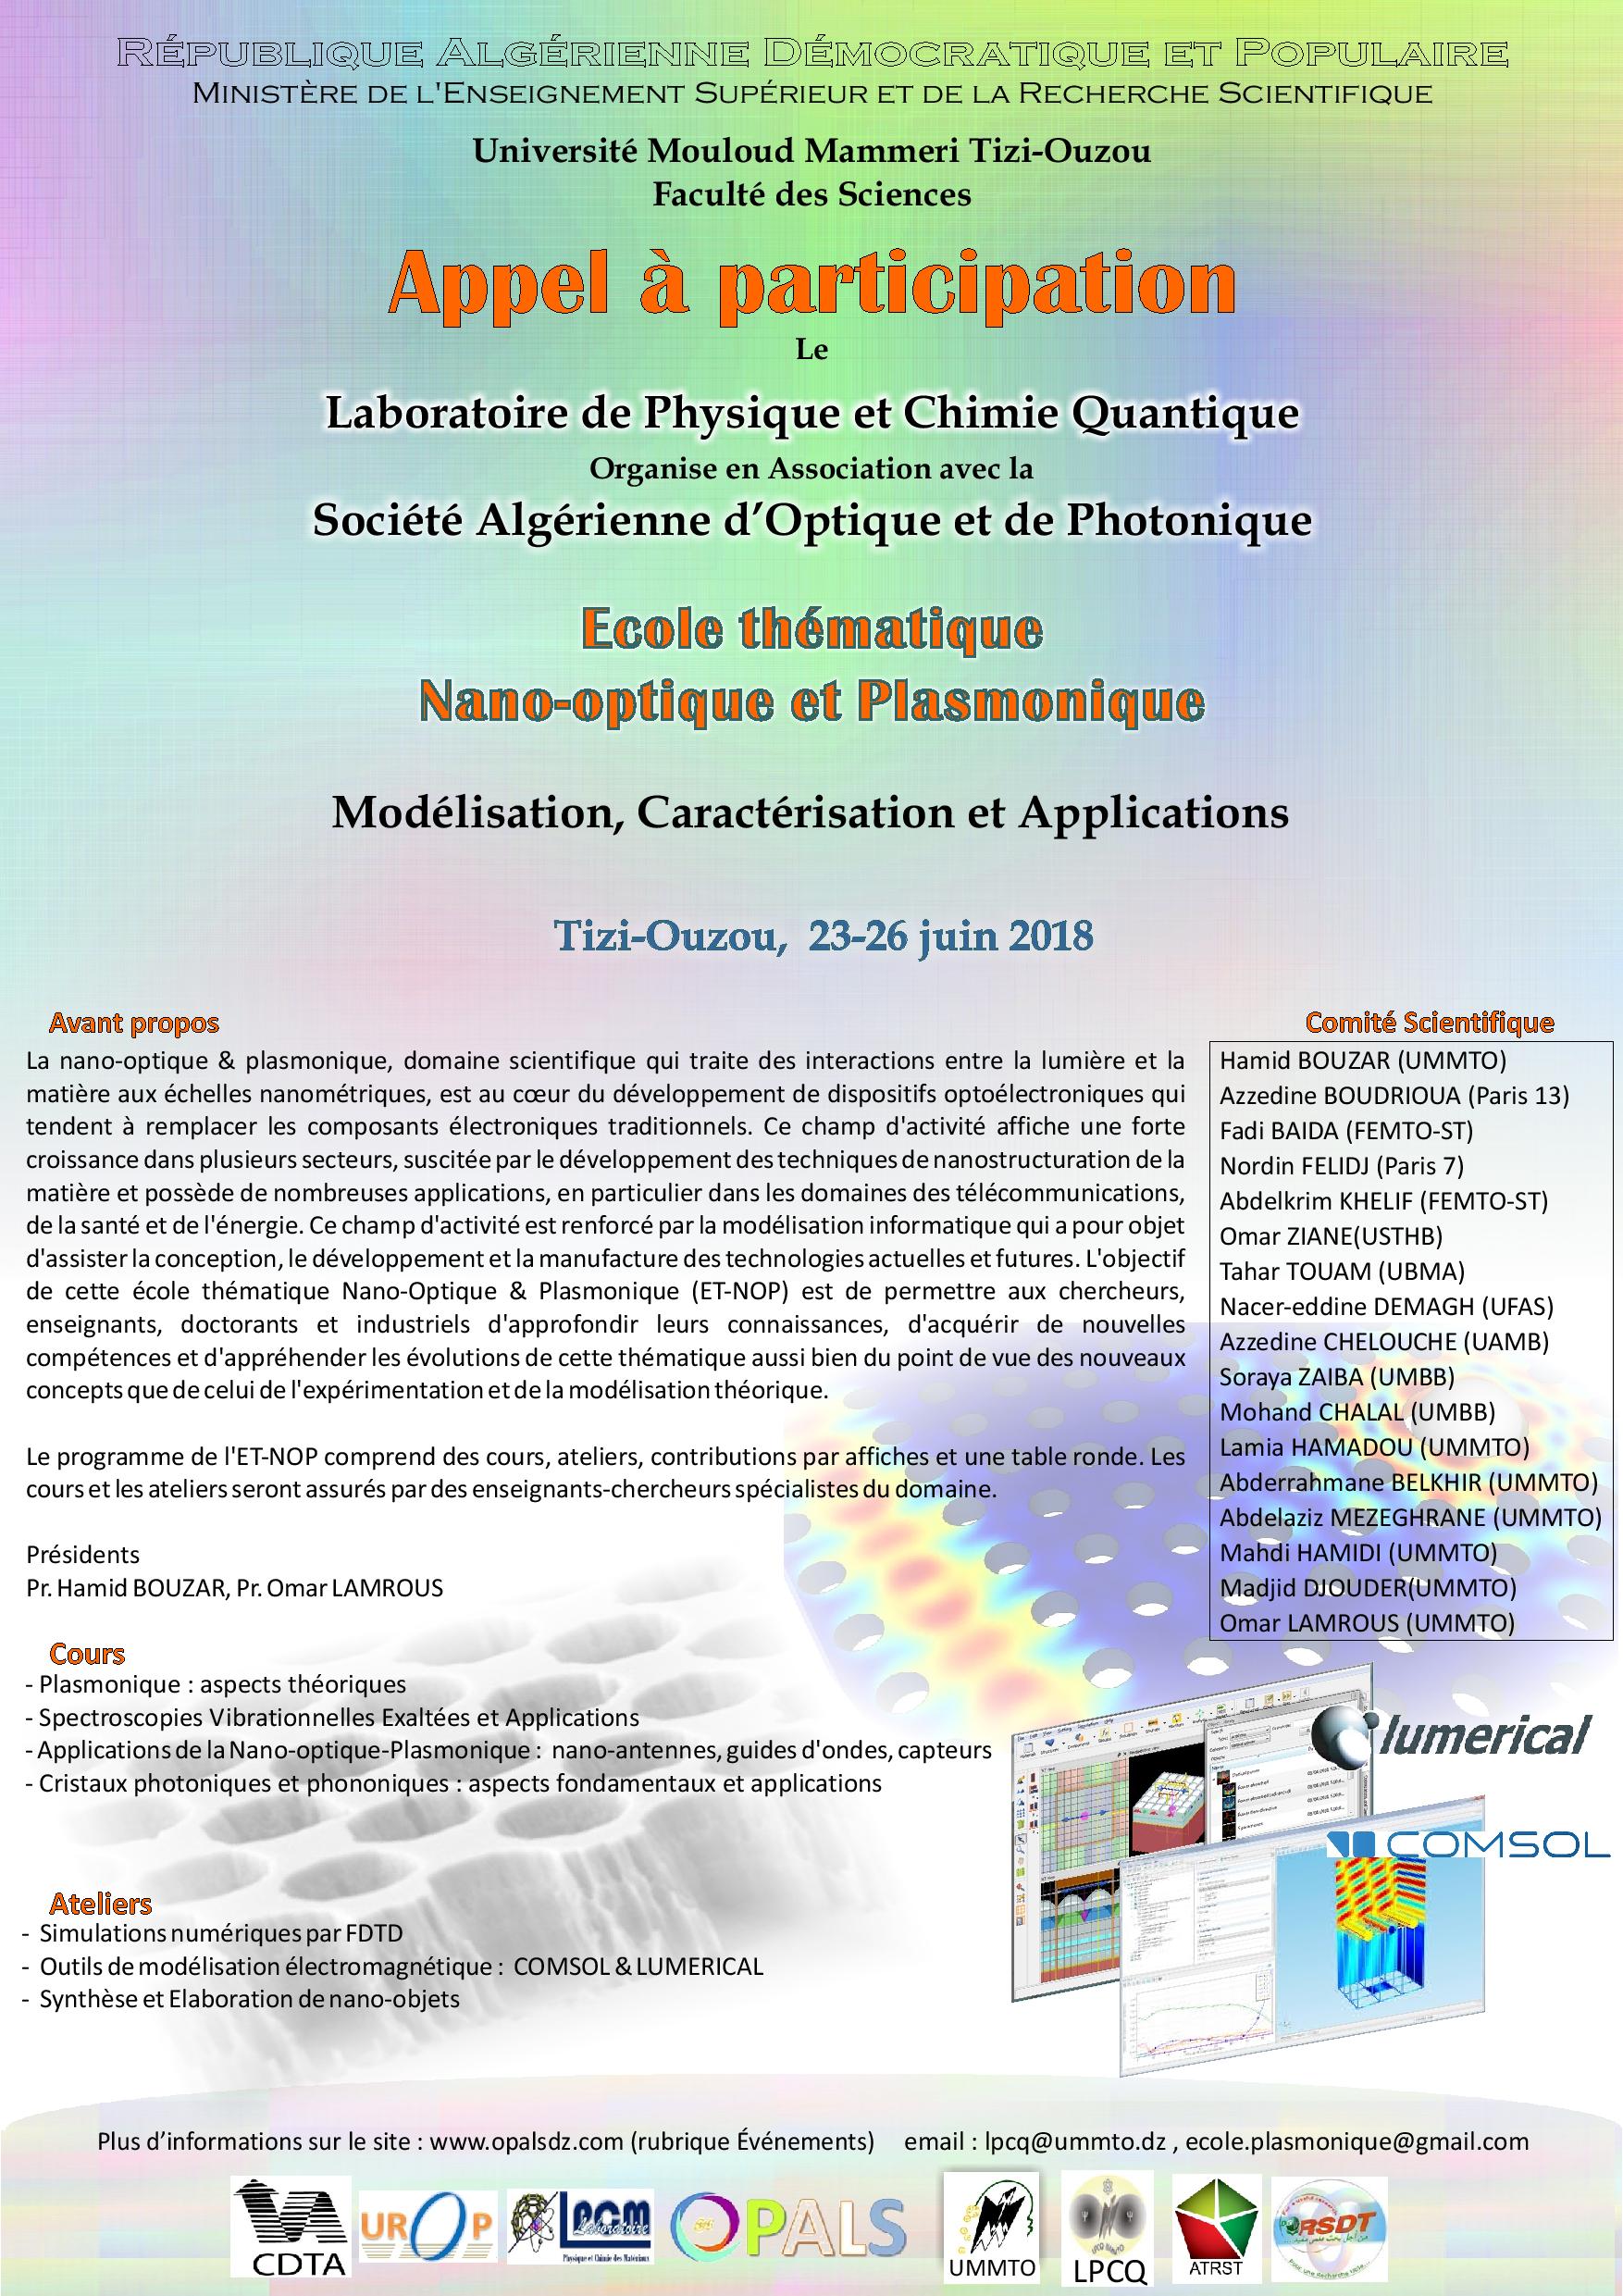 Ecole thématique sur la nano-optique et la plasmonique : modélisation caractérisation et applications du 23 au 26 juin 2018 à Tizi-Ouzou.